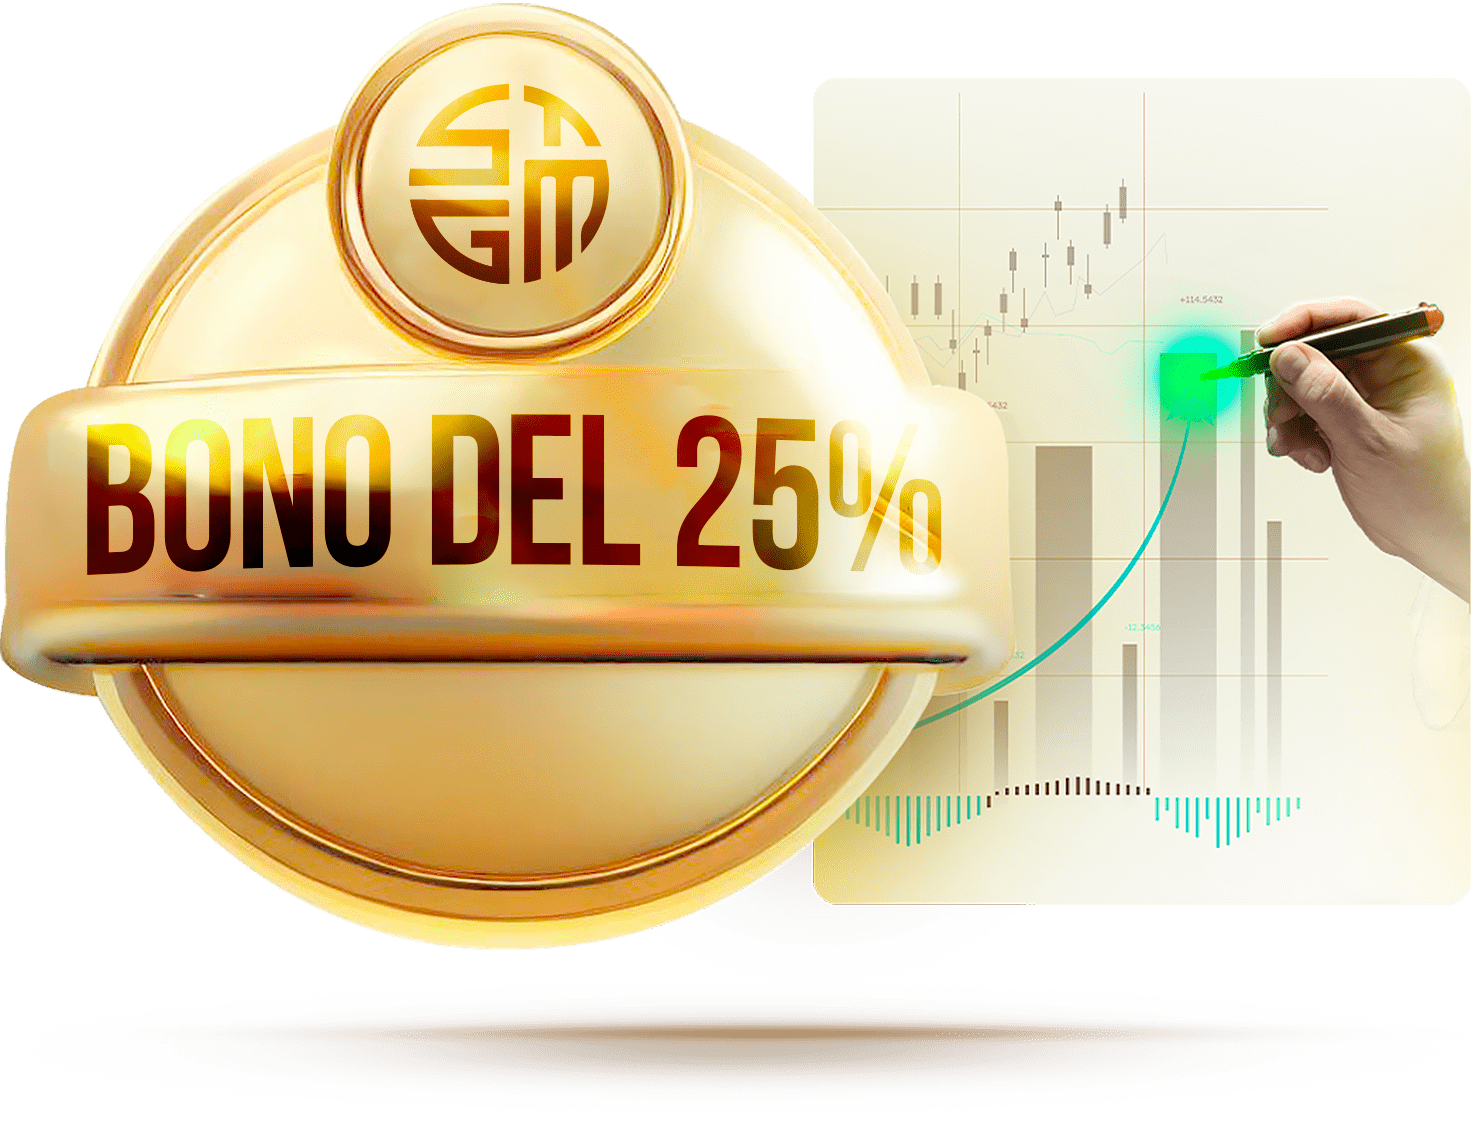 Círculo con bono del 25% y logo de ST Global Markets